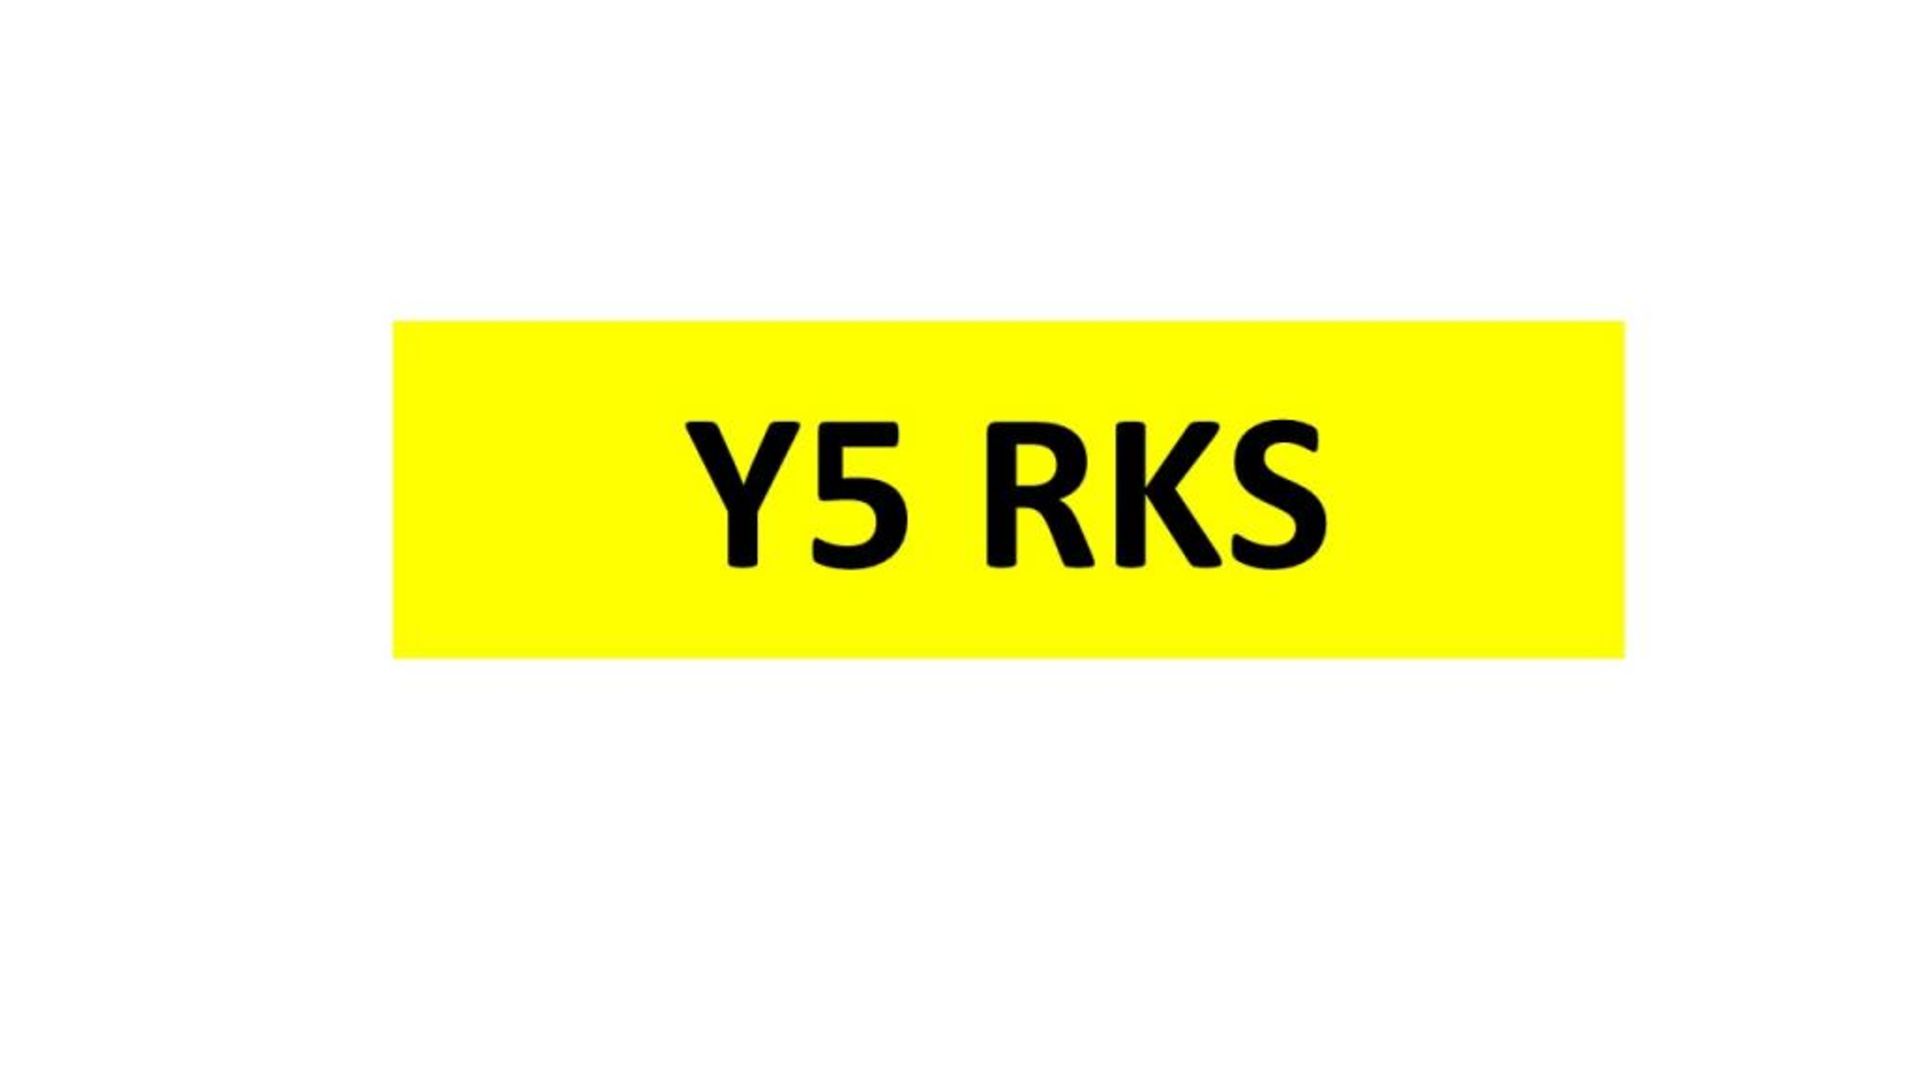 REGISTRATION - Y5 RKS